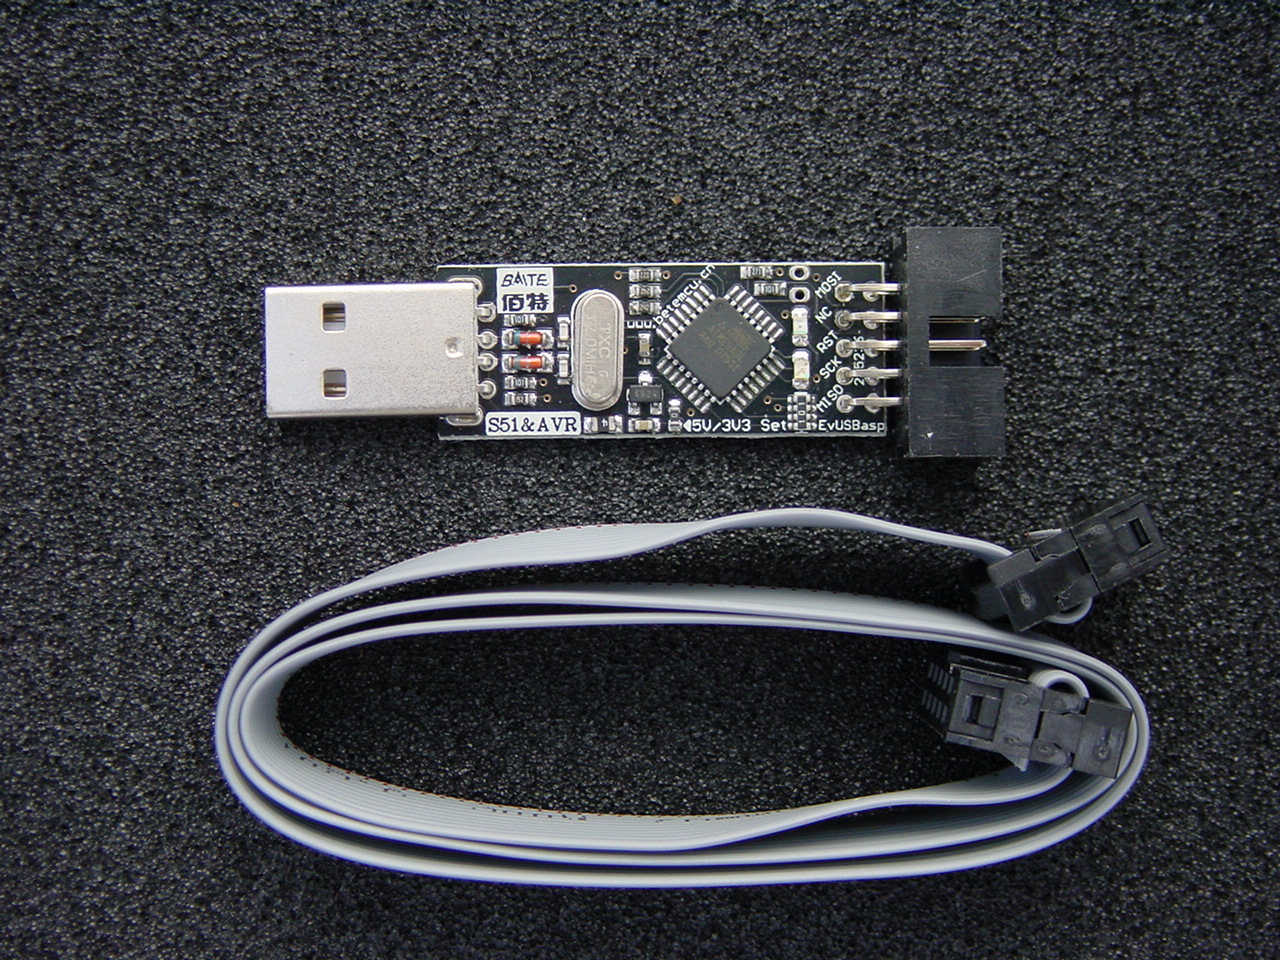 USB Programmerare AVR/51